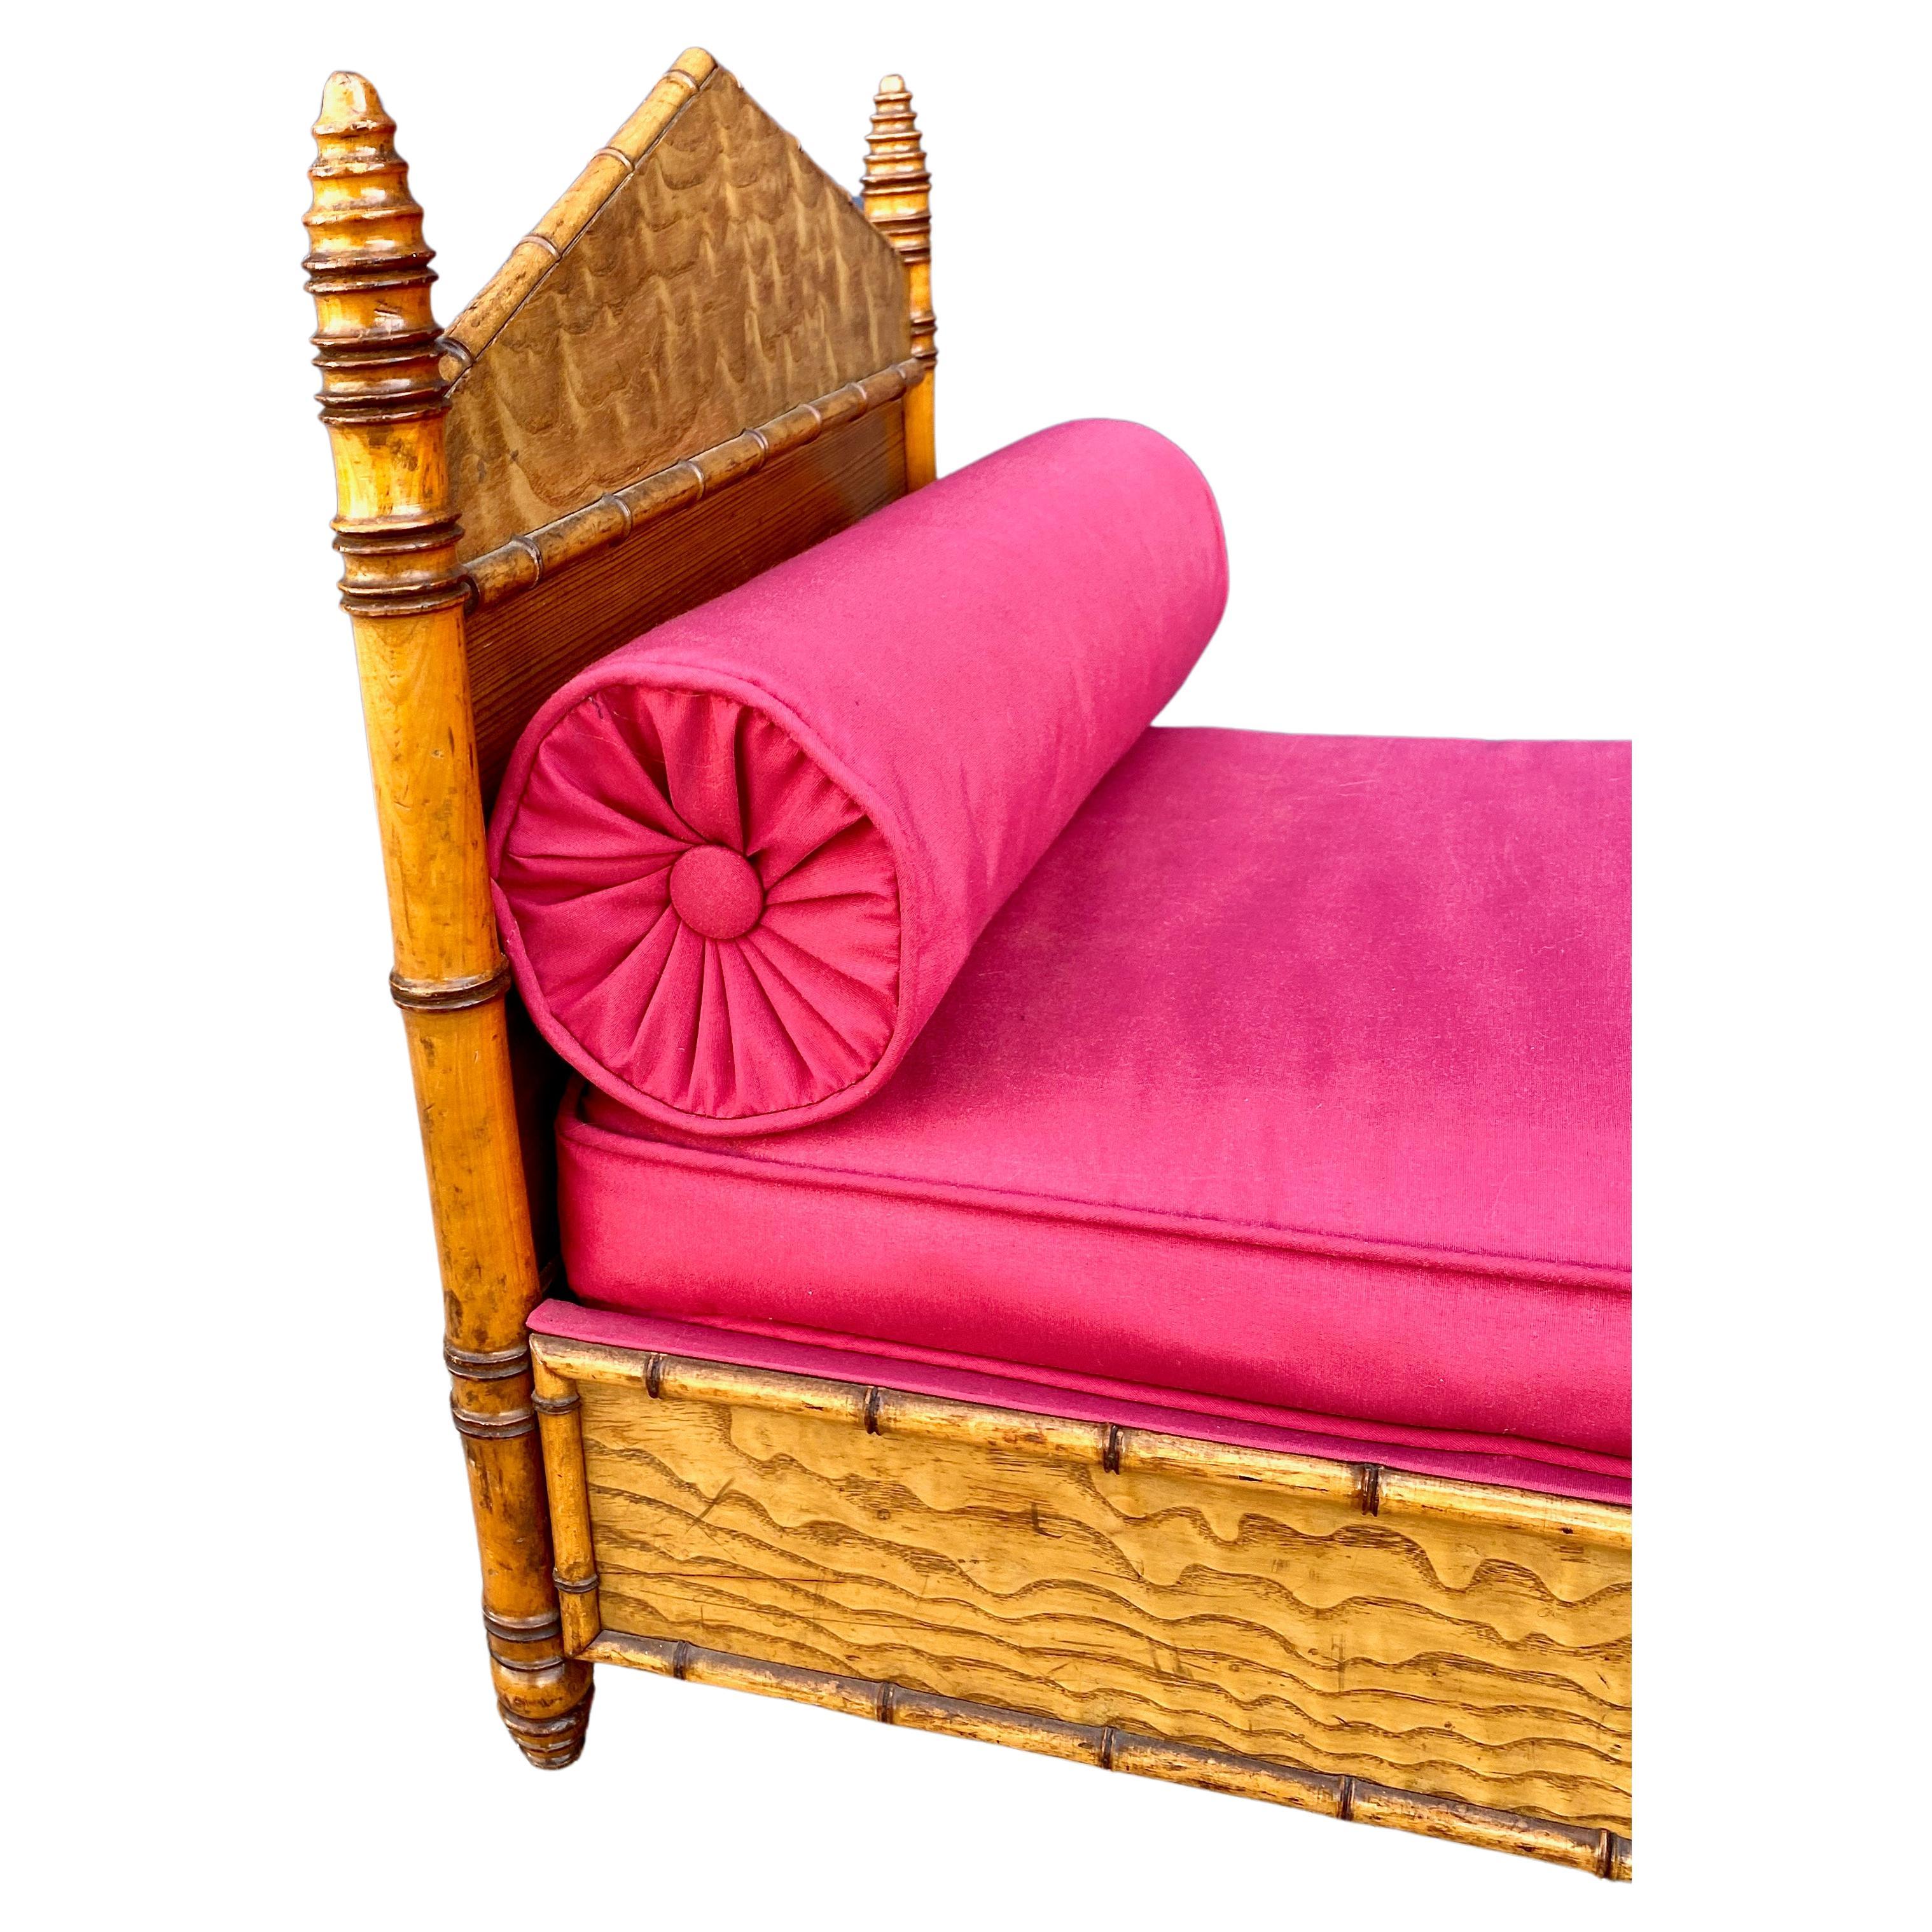 Voici un charmant lit de poupée en faux bambou (lit pour chien ?) qui date de la fin du 19e siècle. Ce petit lit est en très bon état et présente des épis de faîtage en forme de ruche, une tête et un pied de lit en forme de pyramide et il est